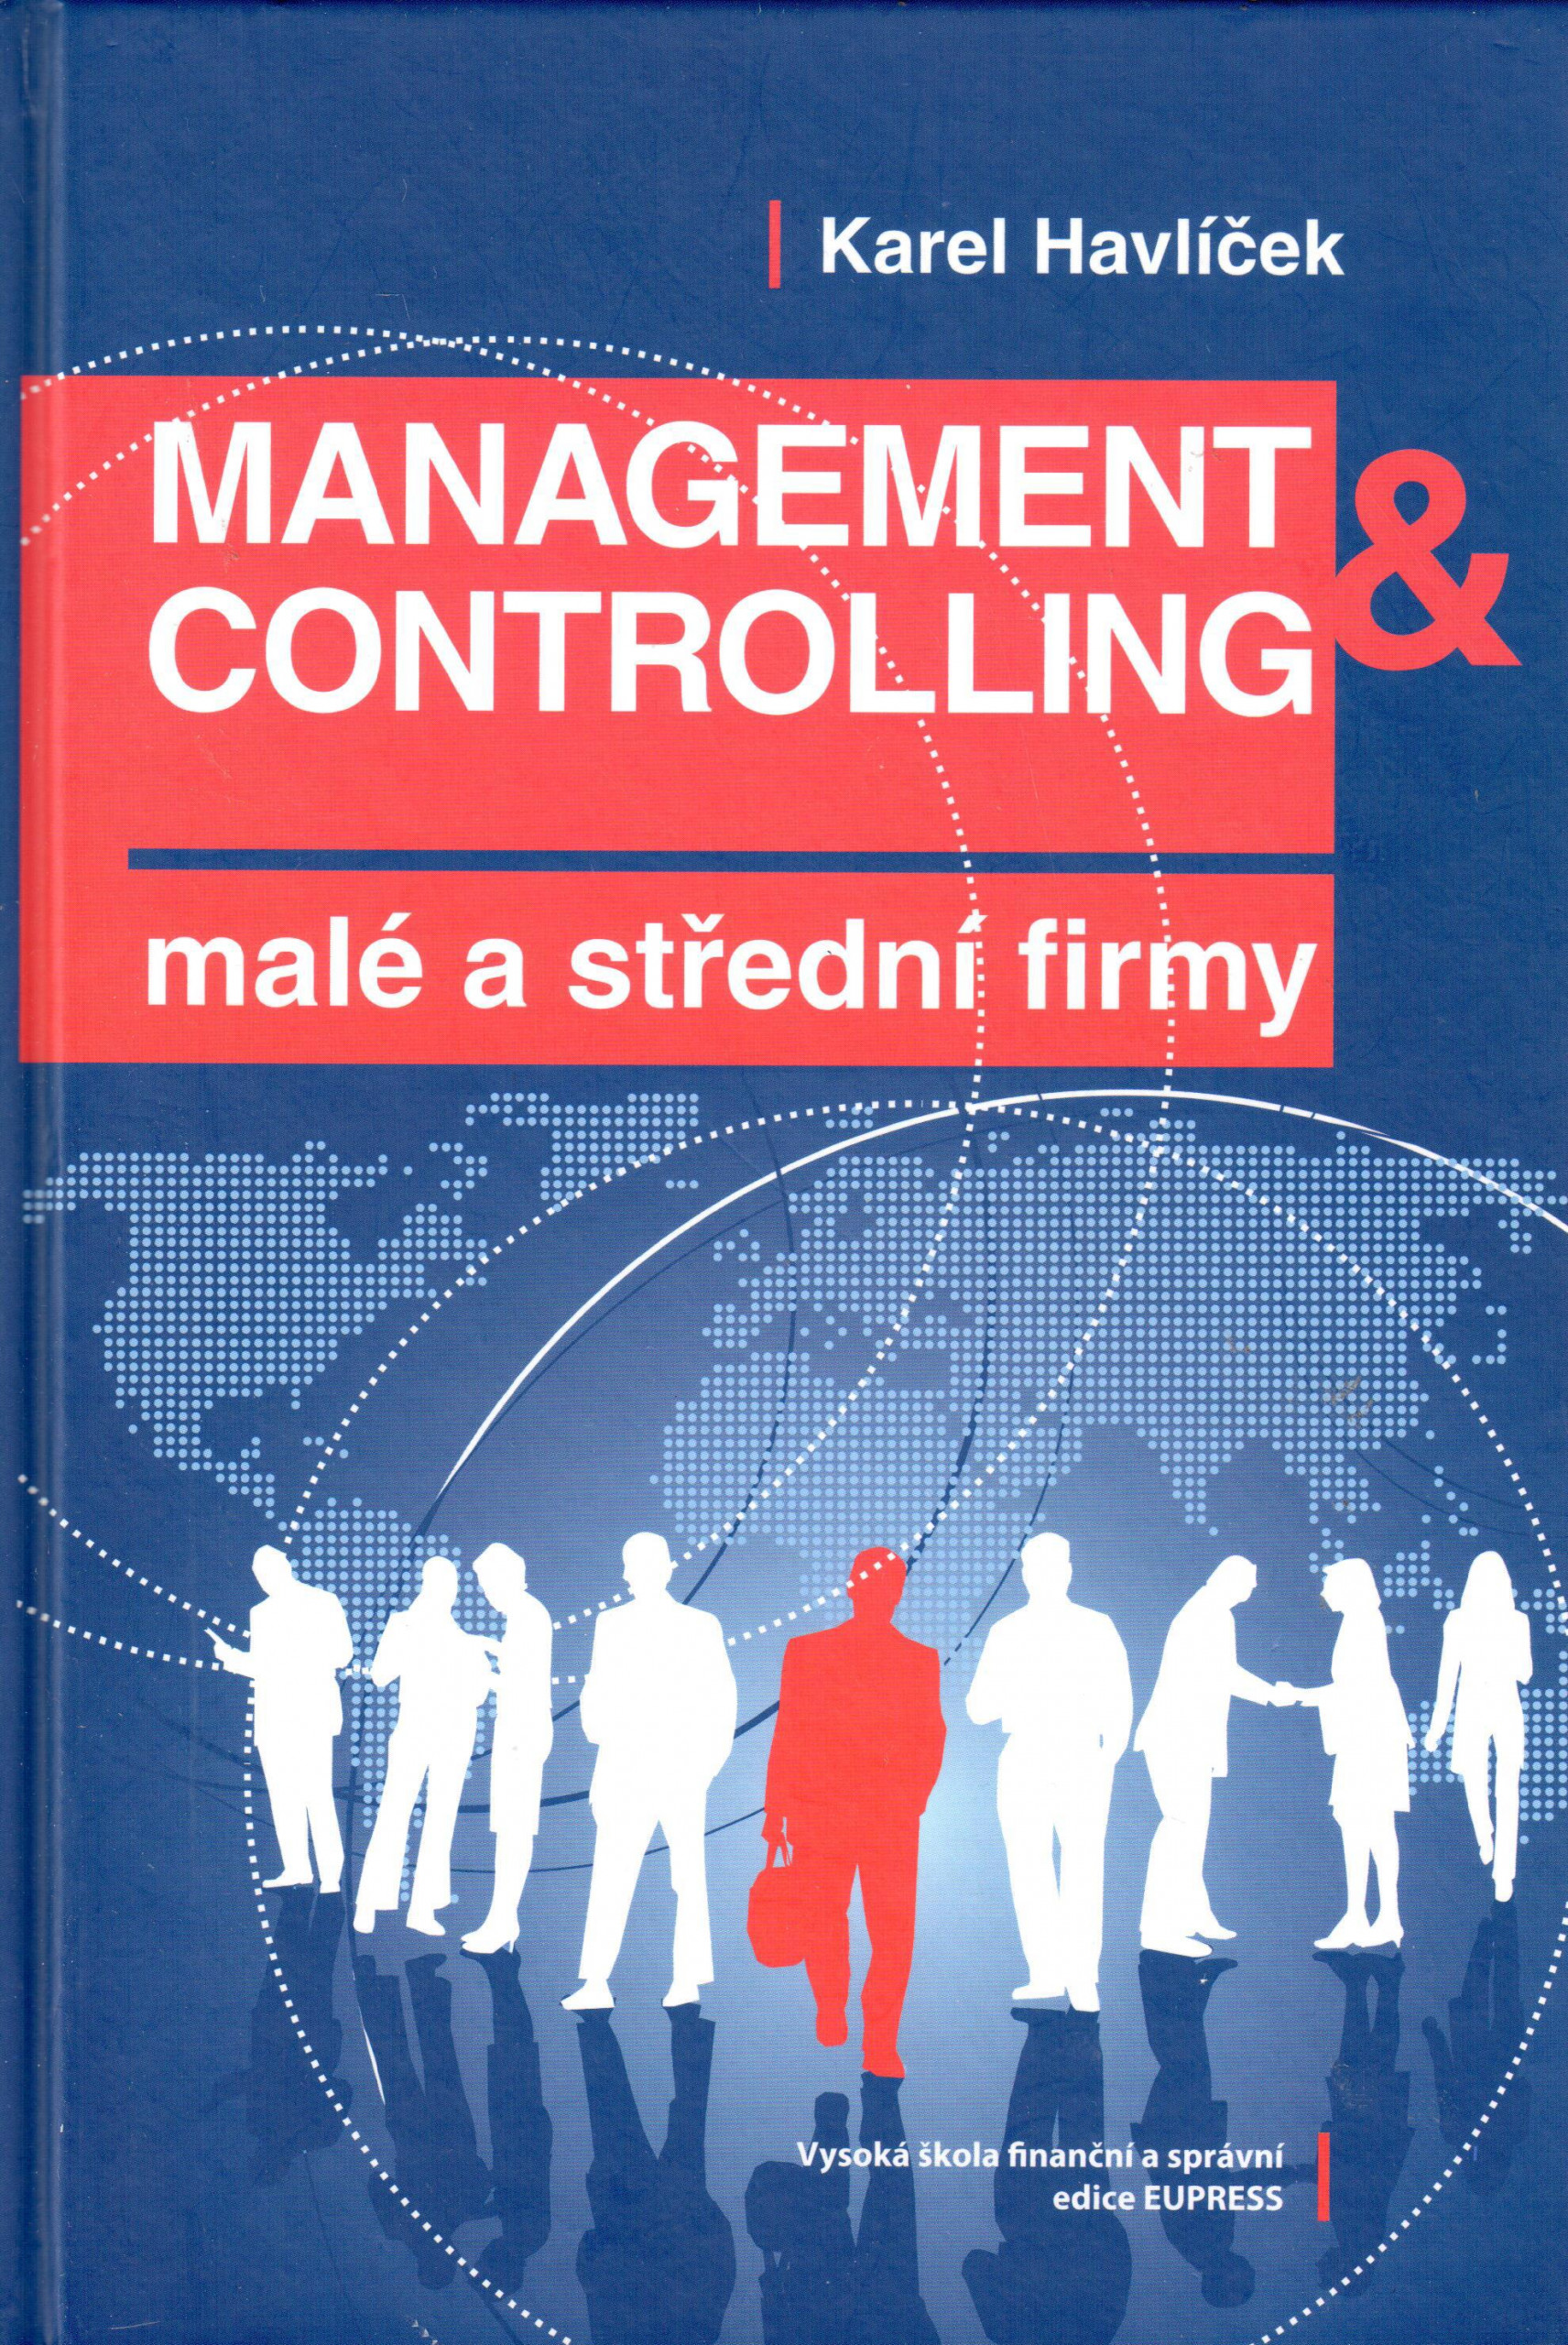 Management & controlling malé a střední firmy - Náhled učebnice